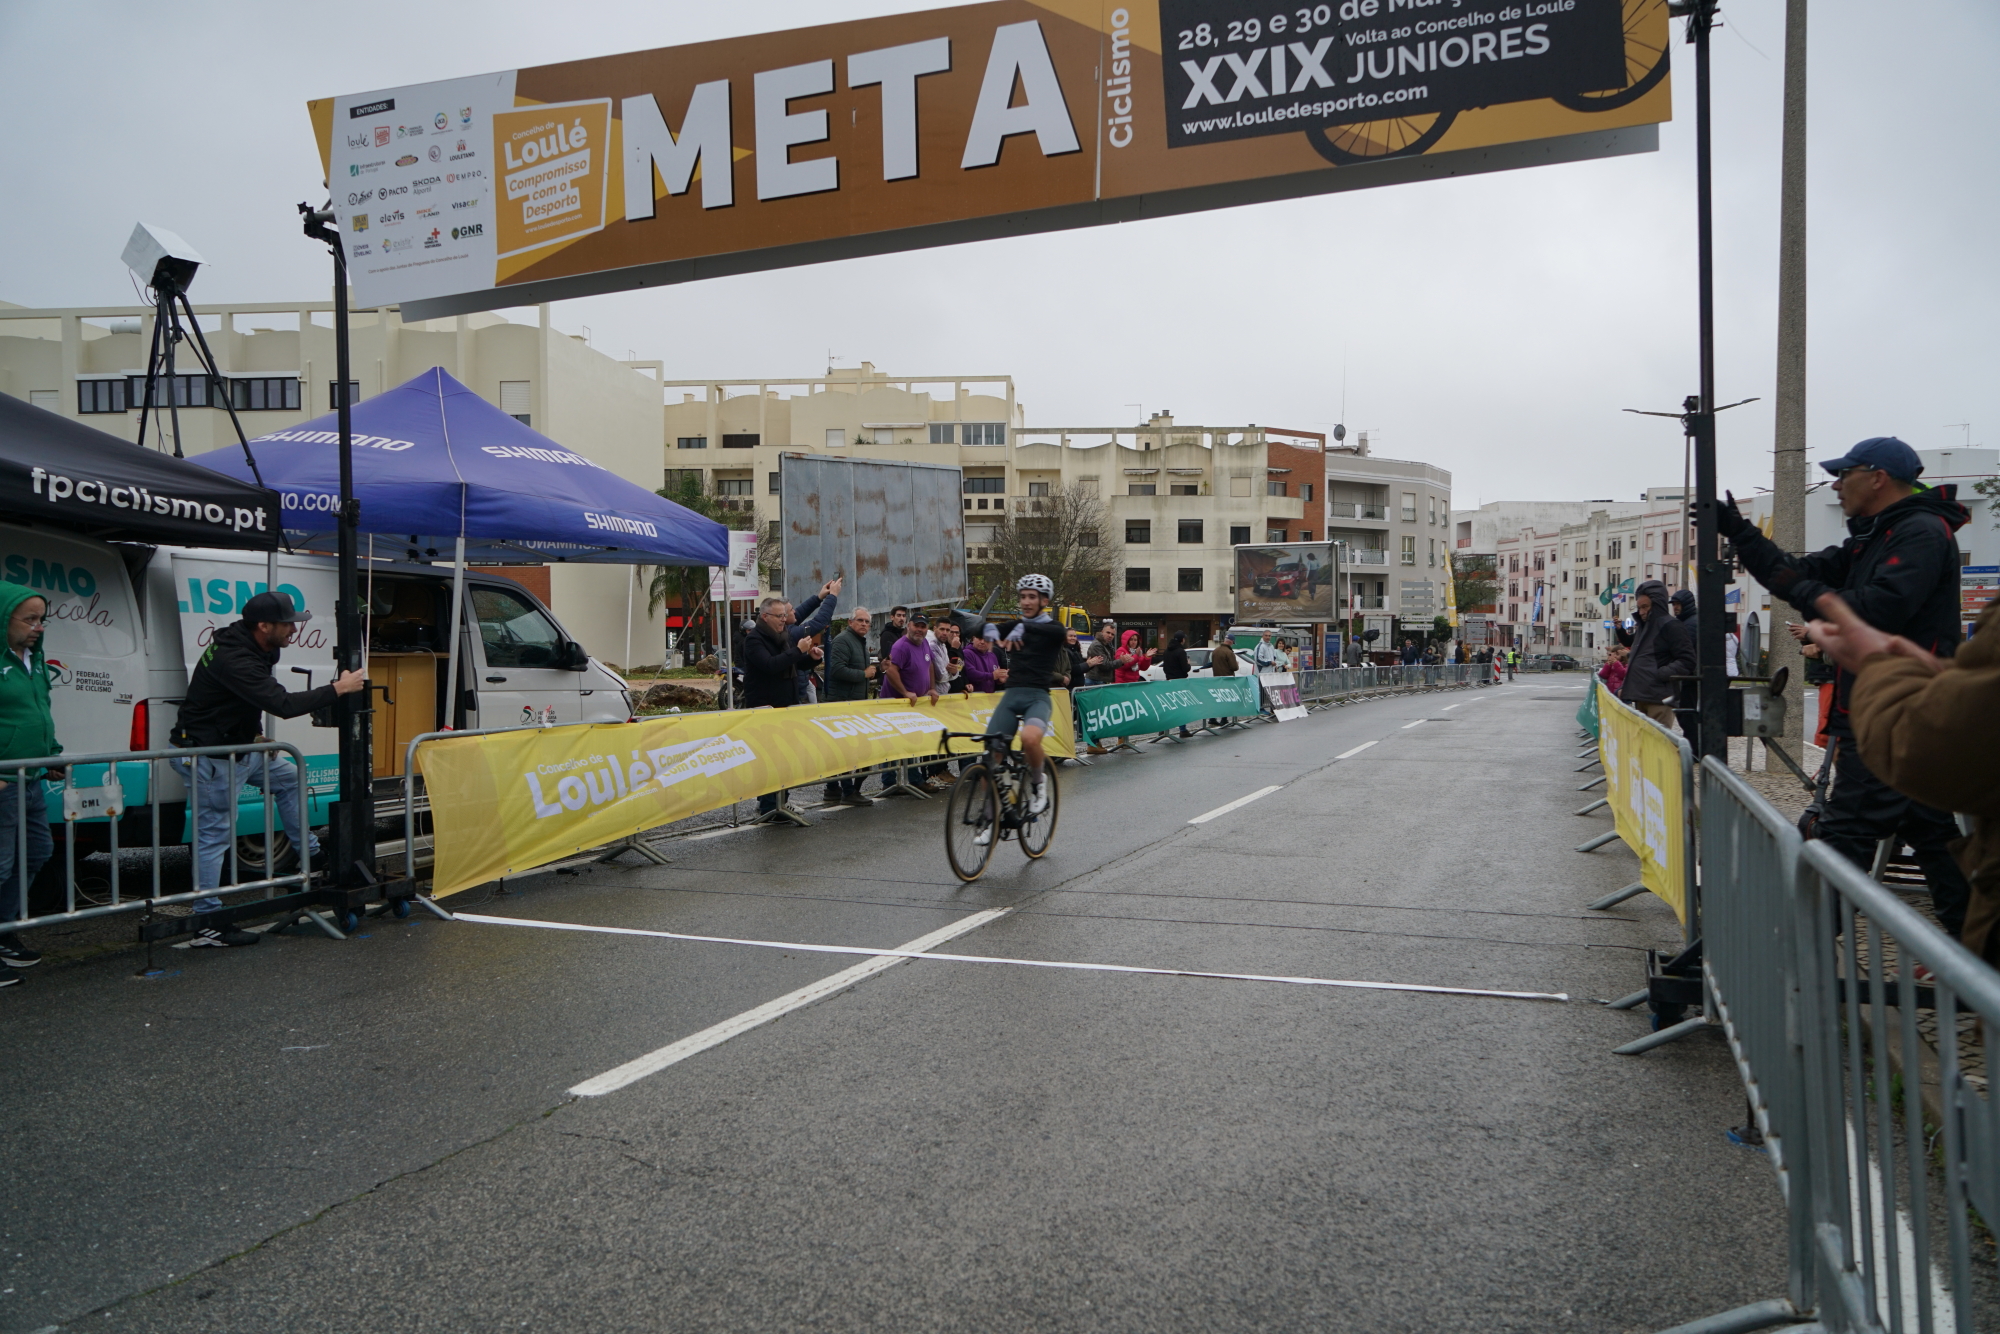 Enrique Maranchon vence etapa 1 e é o primeiro líder da Volta ao Concelho de Loulé!